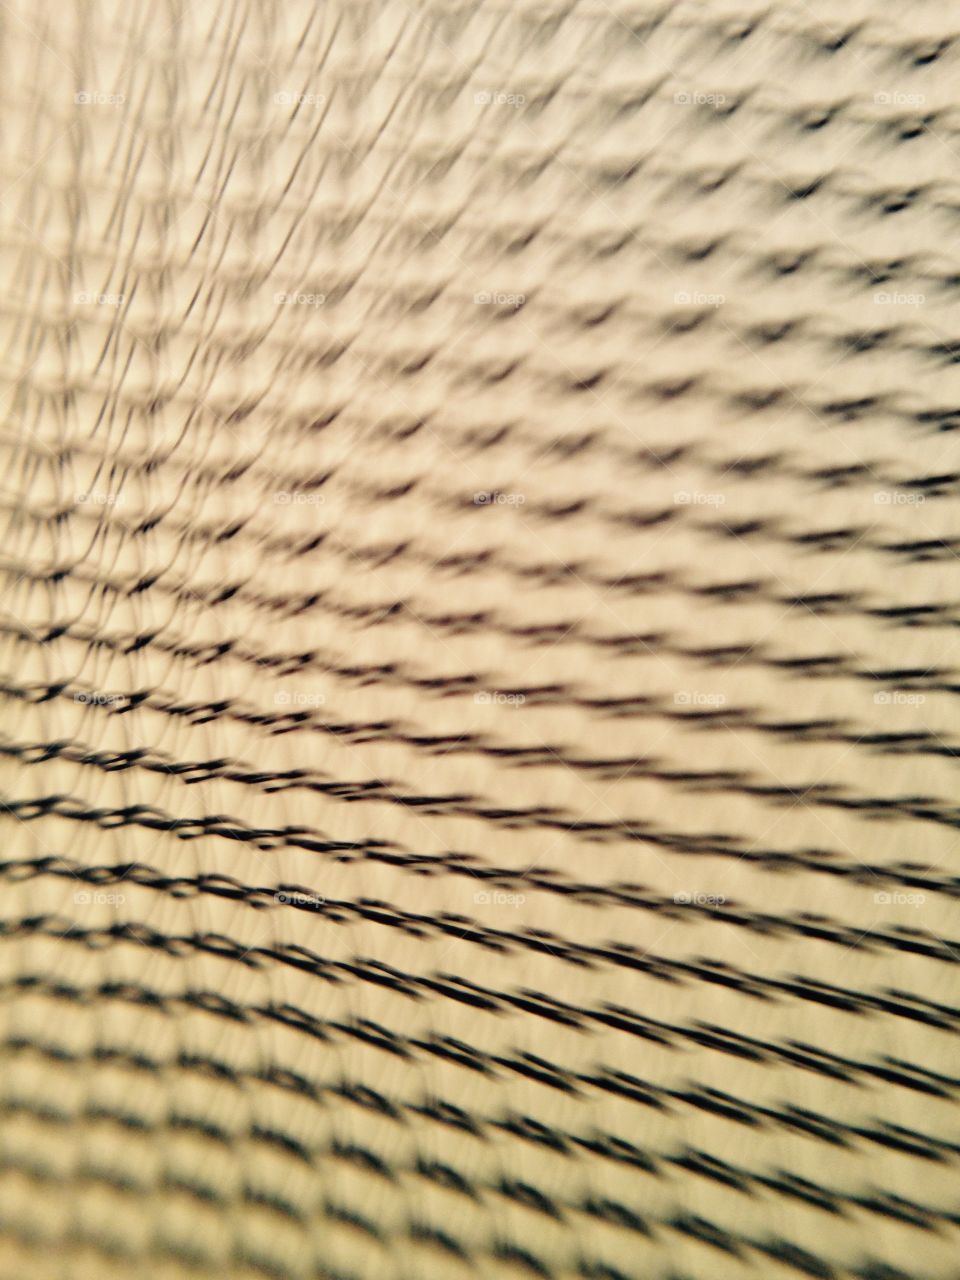 Net. Mosquito net